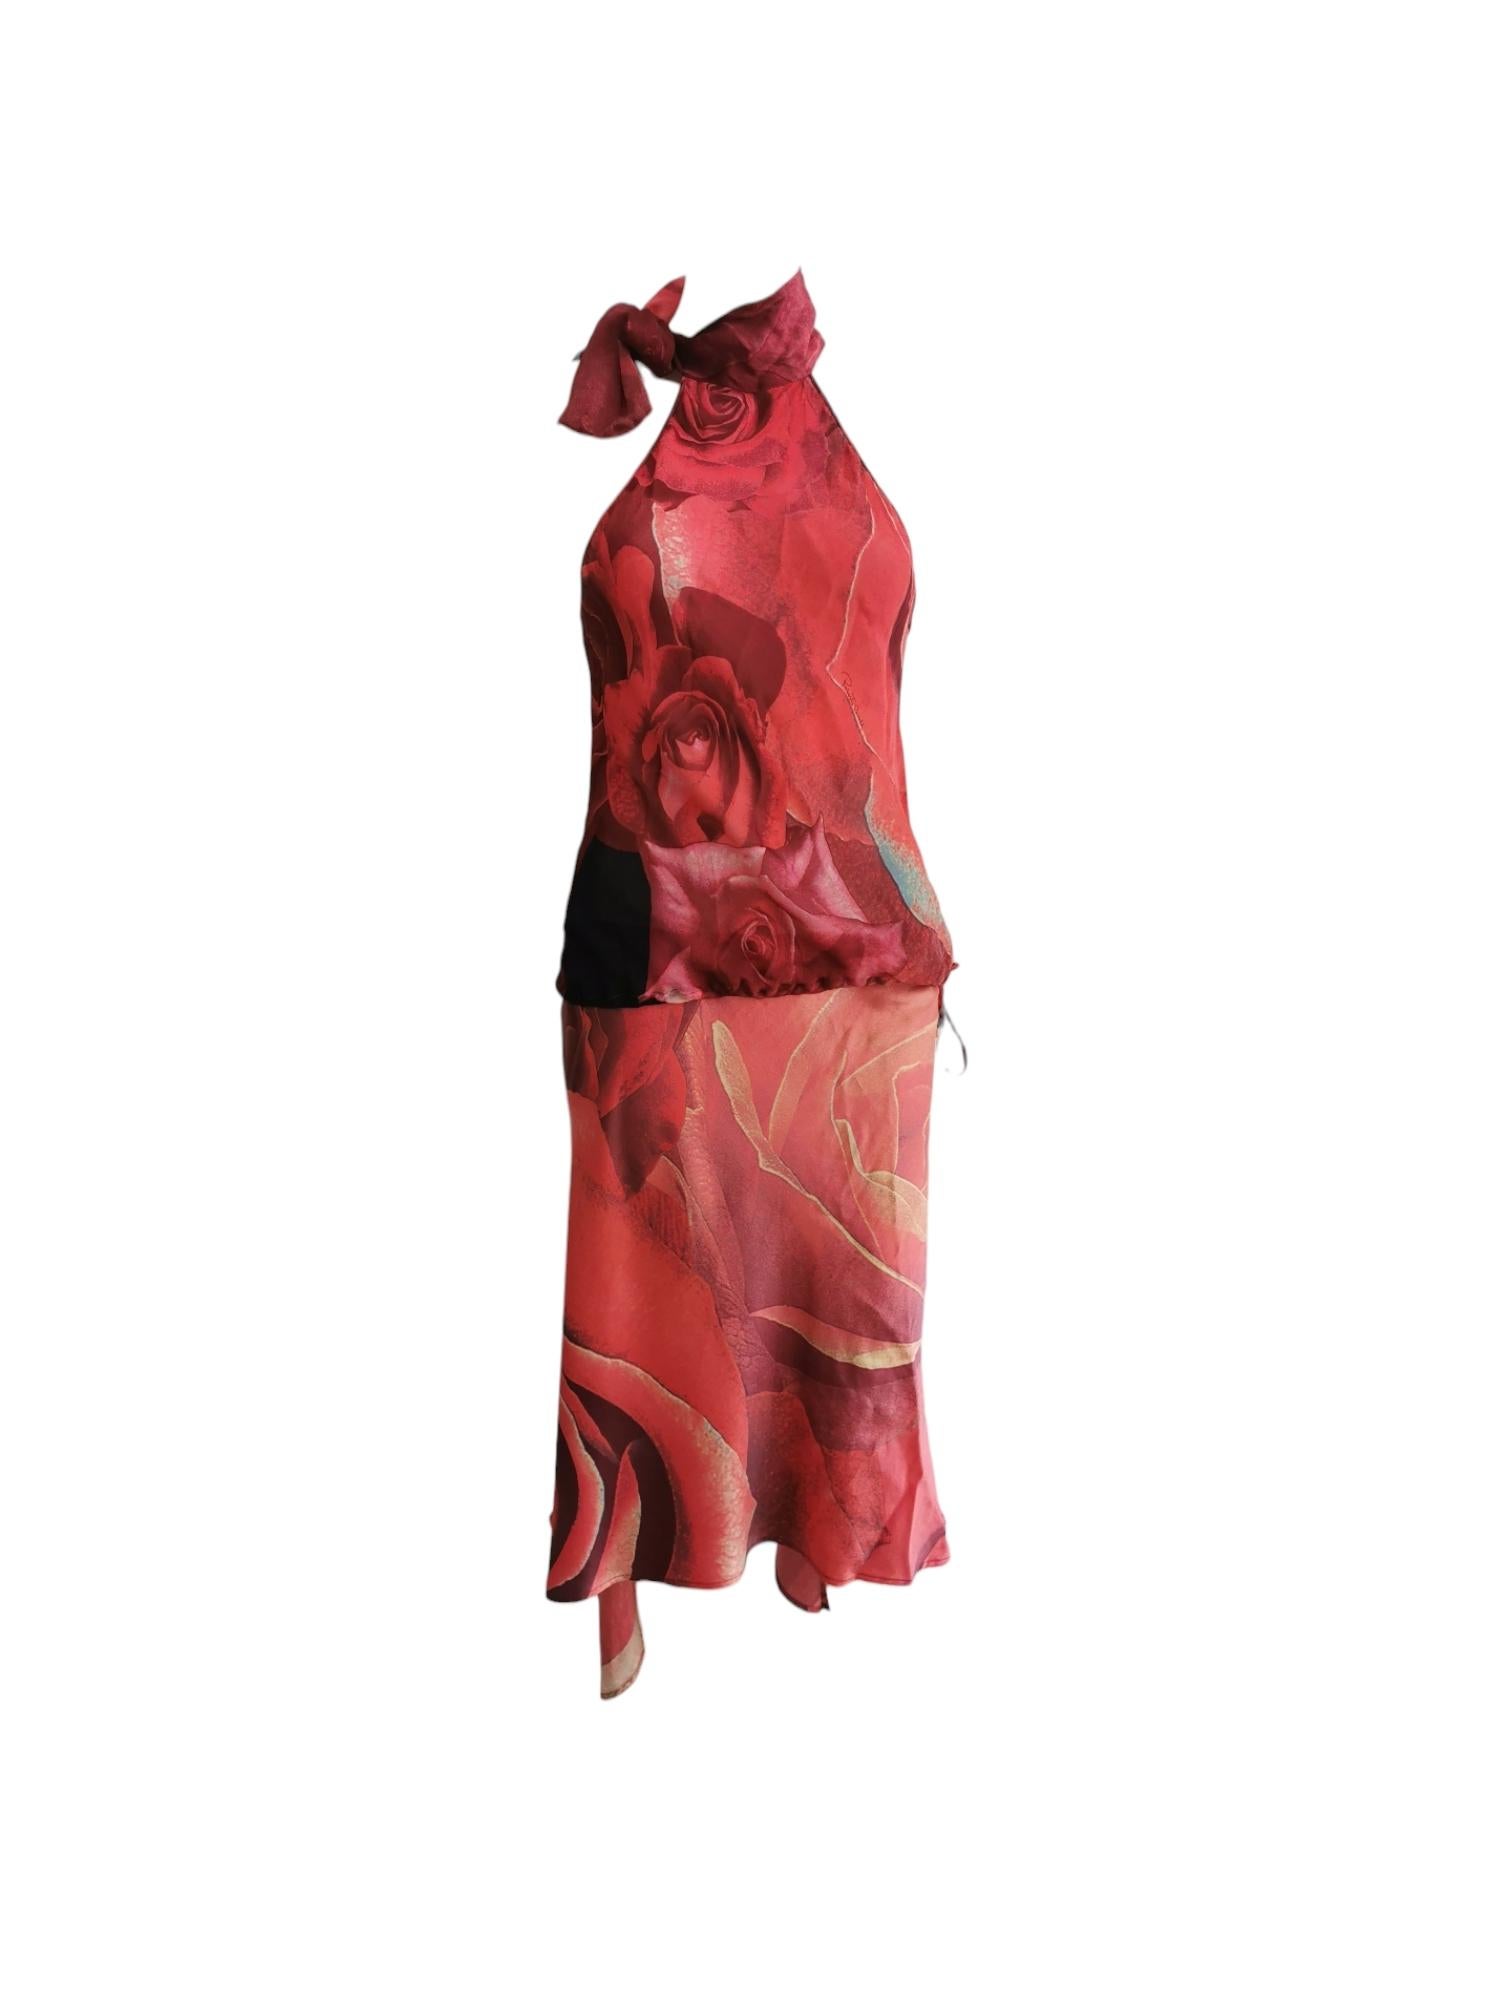 My Runway Archive vous présente ce fantastique ensemble jupe imprimé rose de Roberto Cavalli, issu de la collection SS 2000. 
Condit : Très bon
MATERIAL : Soie
Taille : Top taille petite, jupe taille moyenne 
Suivez-nous sur Insta ! @myrunwayarchive